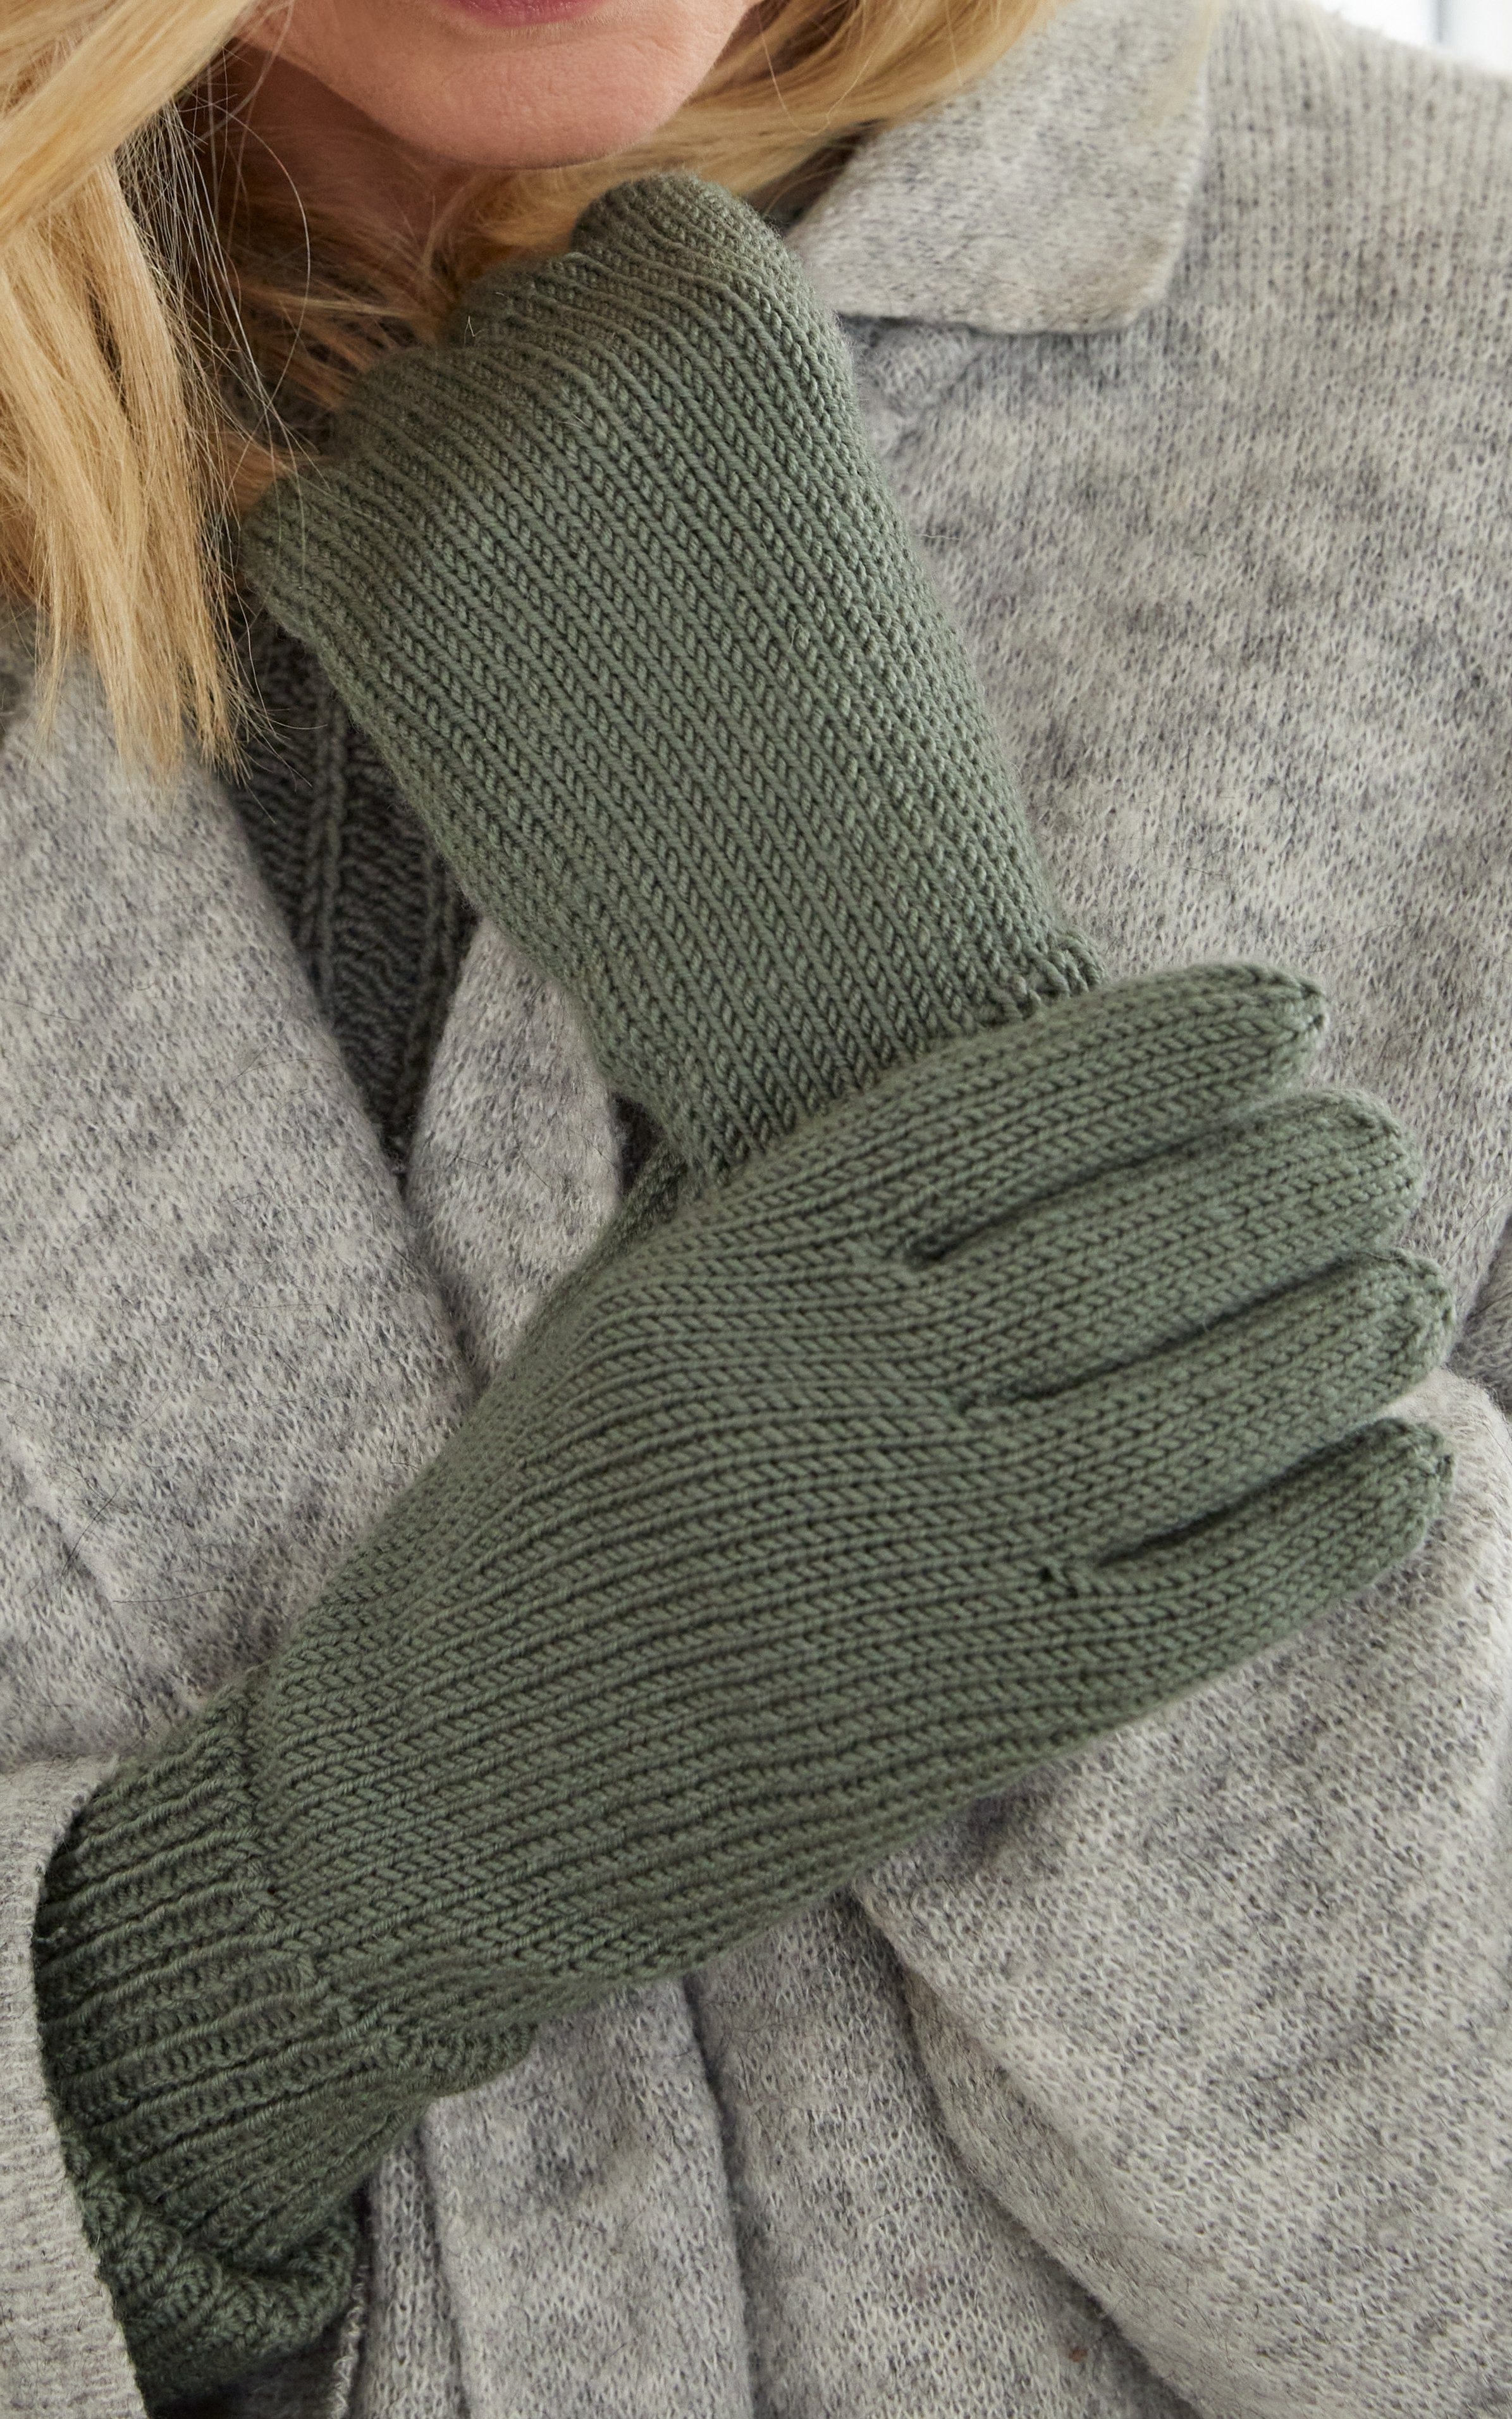 Handschuhe - COOL WOOL - Strickset von LANA GROSSA jetzt online kaufen bei OONIQUE